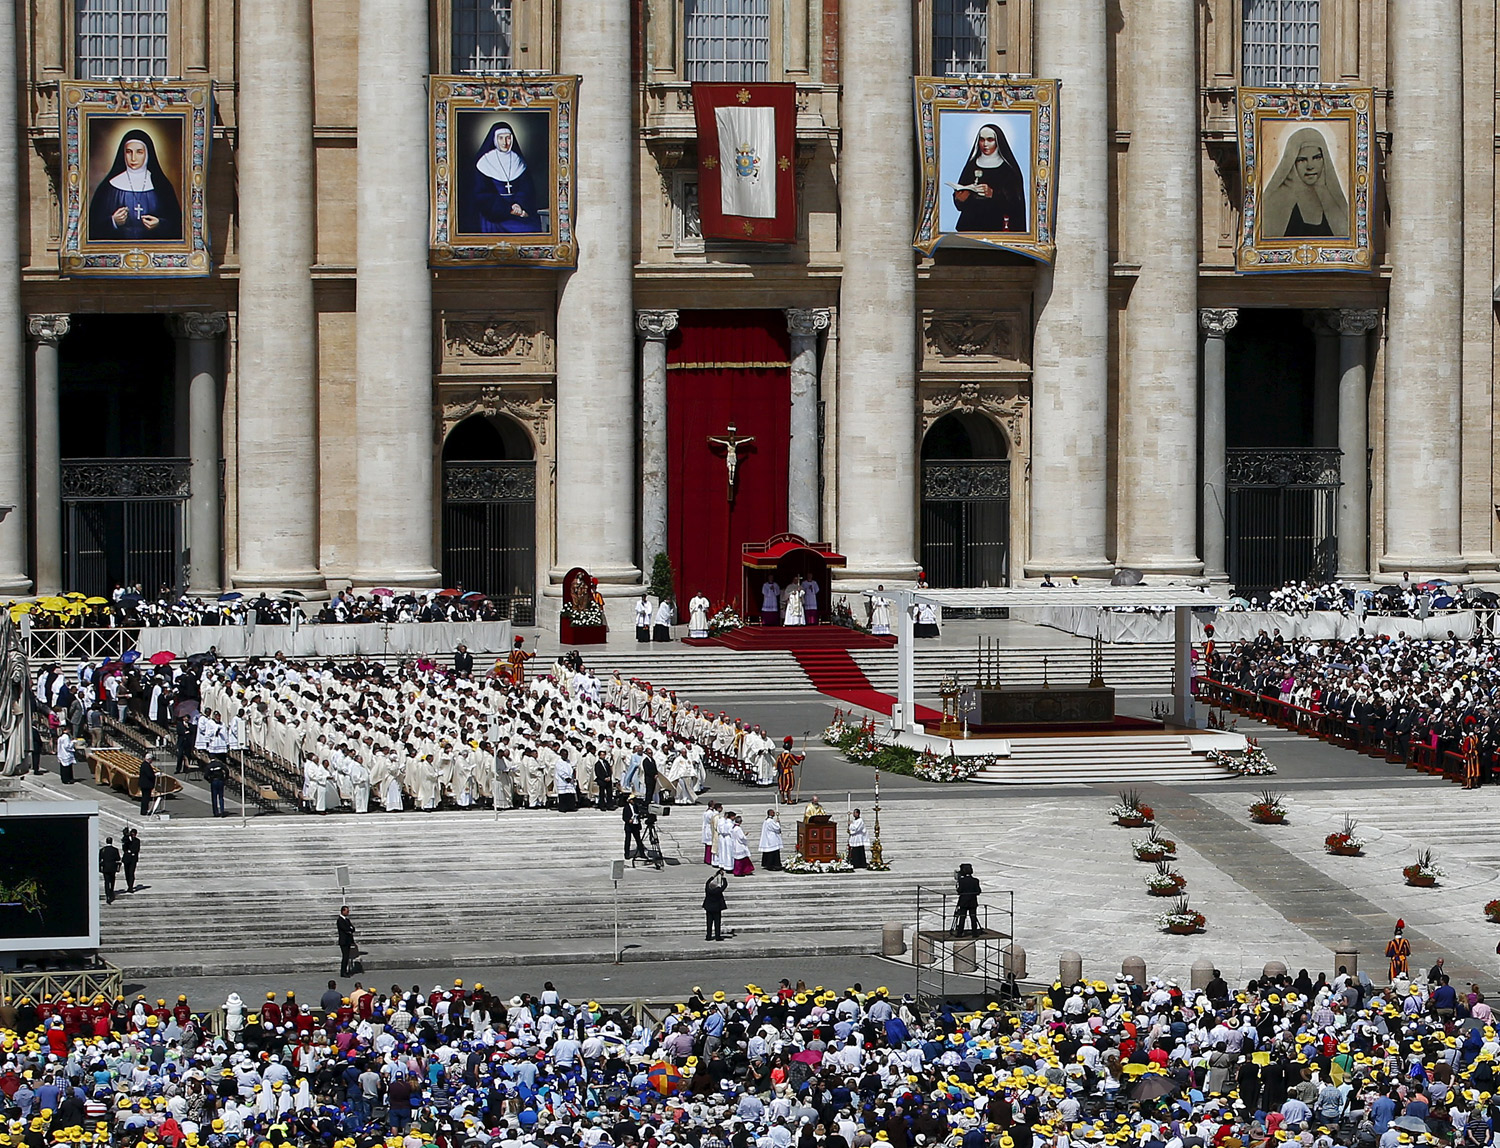 El Papa pide a cristianos que convivan con fraternidad al canonizar a palestinas